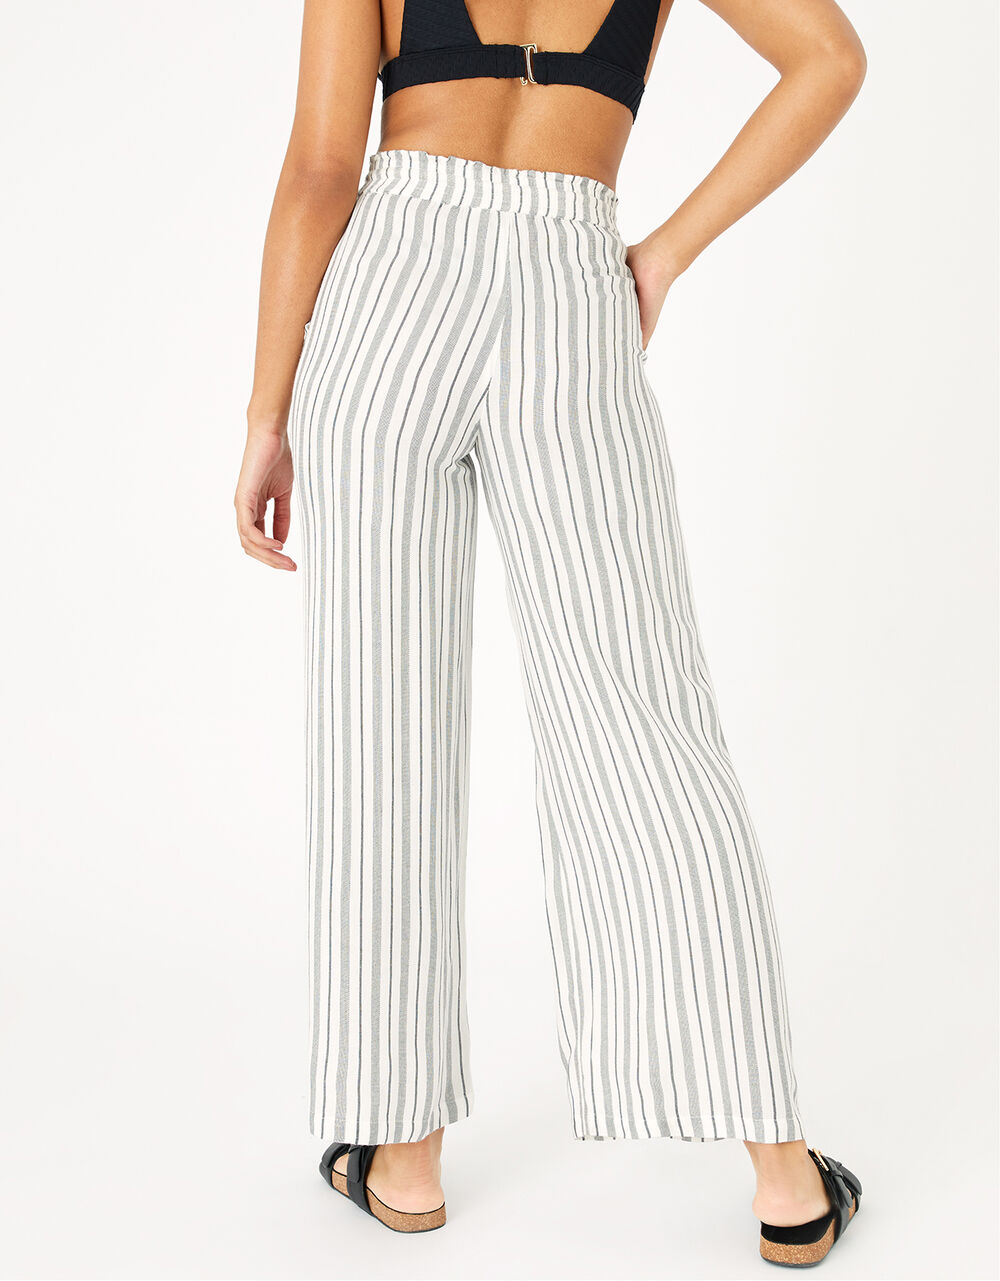 Textured Stripe Beach Trousers Black | Beach trousers & Shorts ...